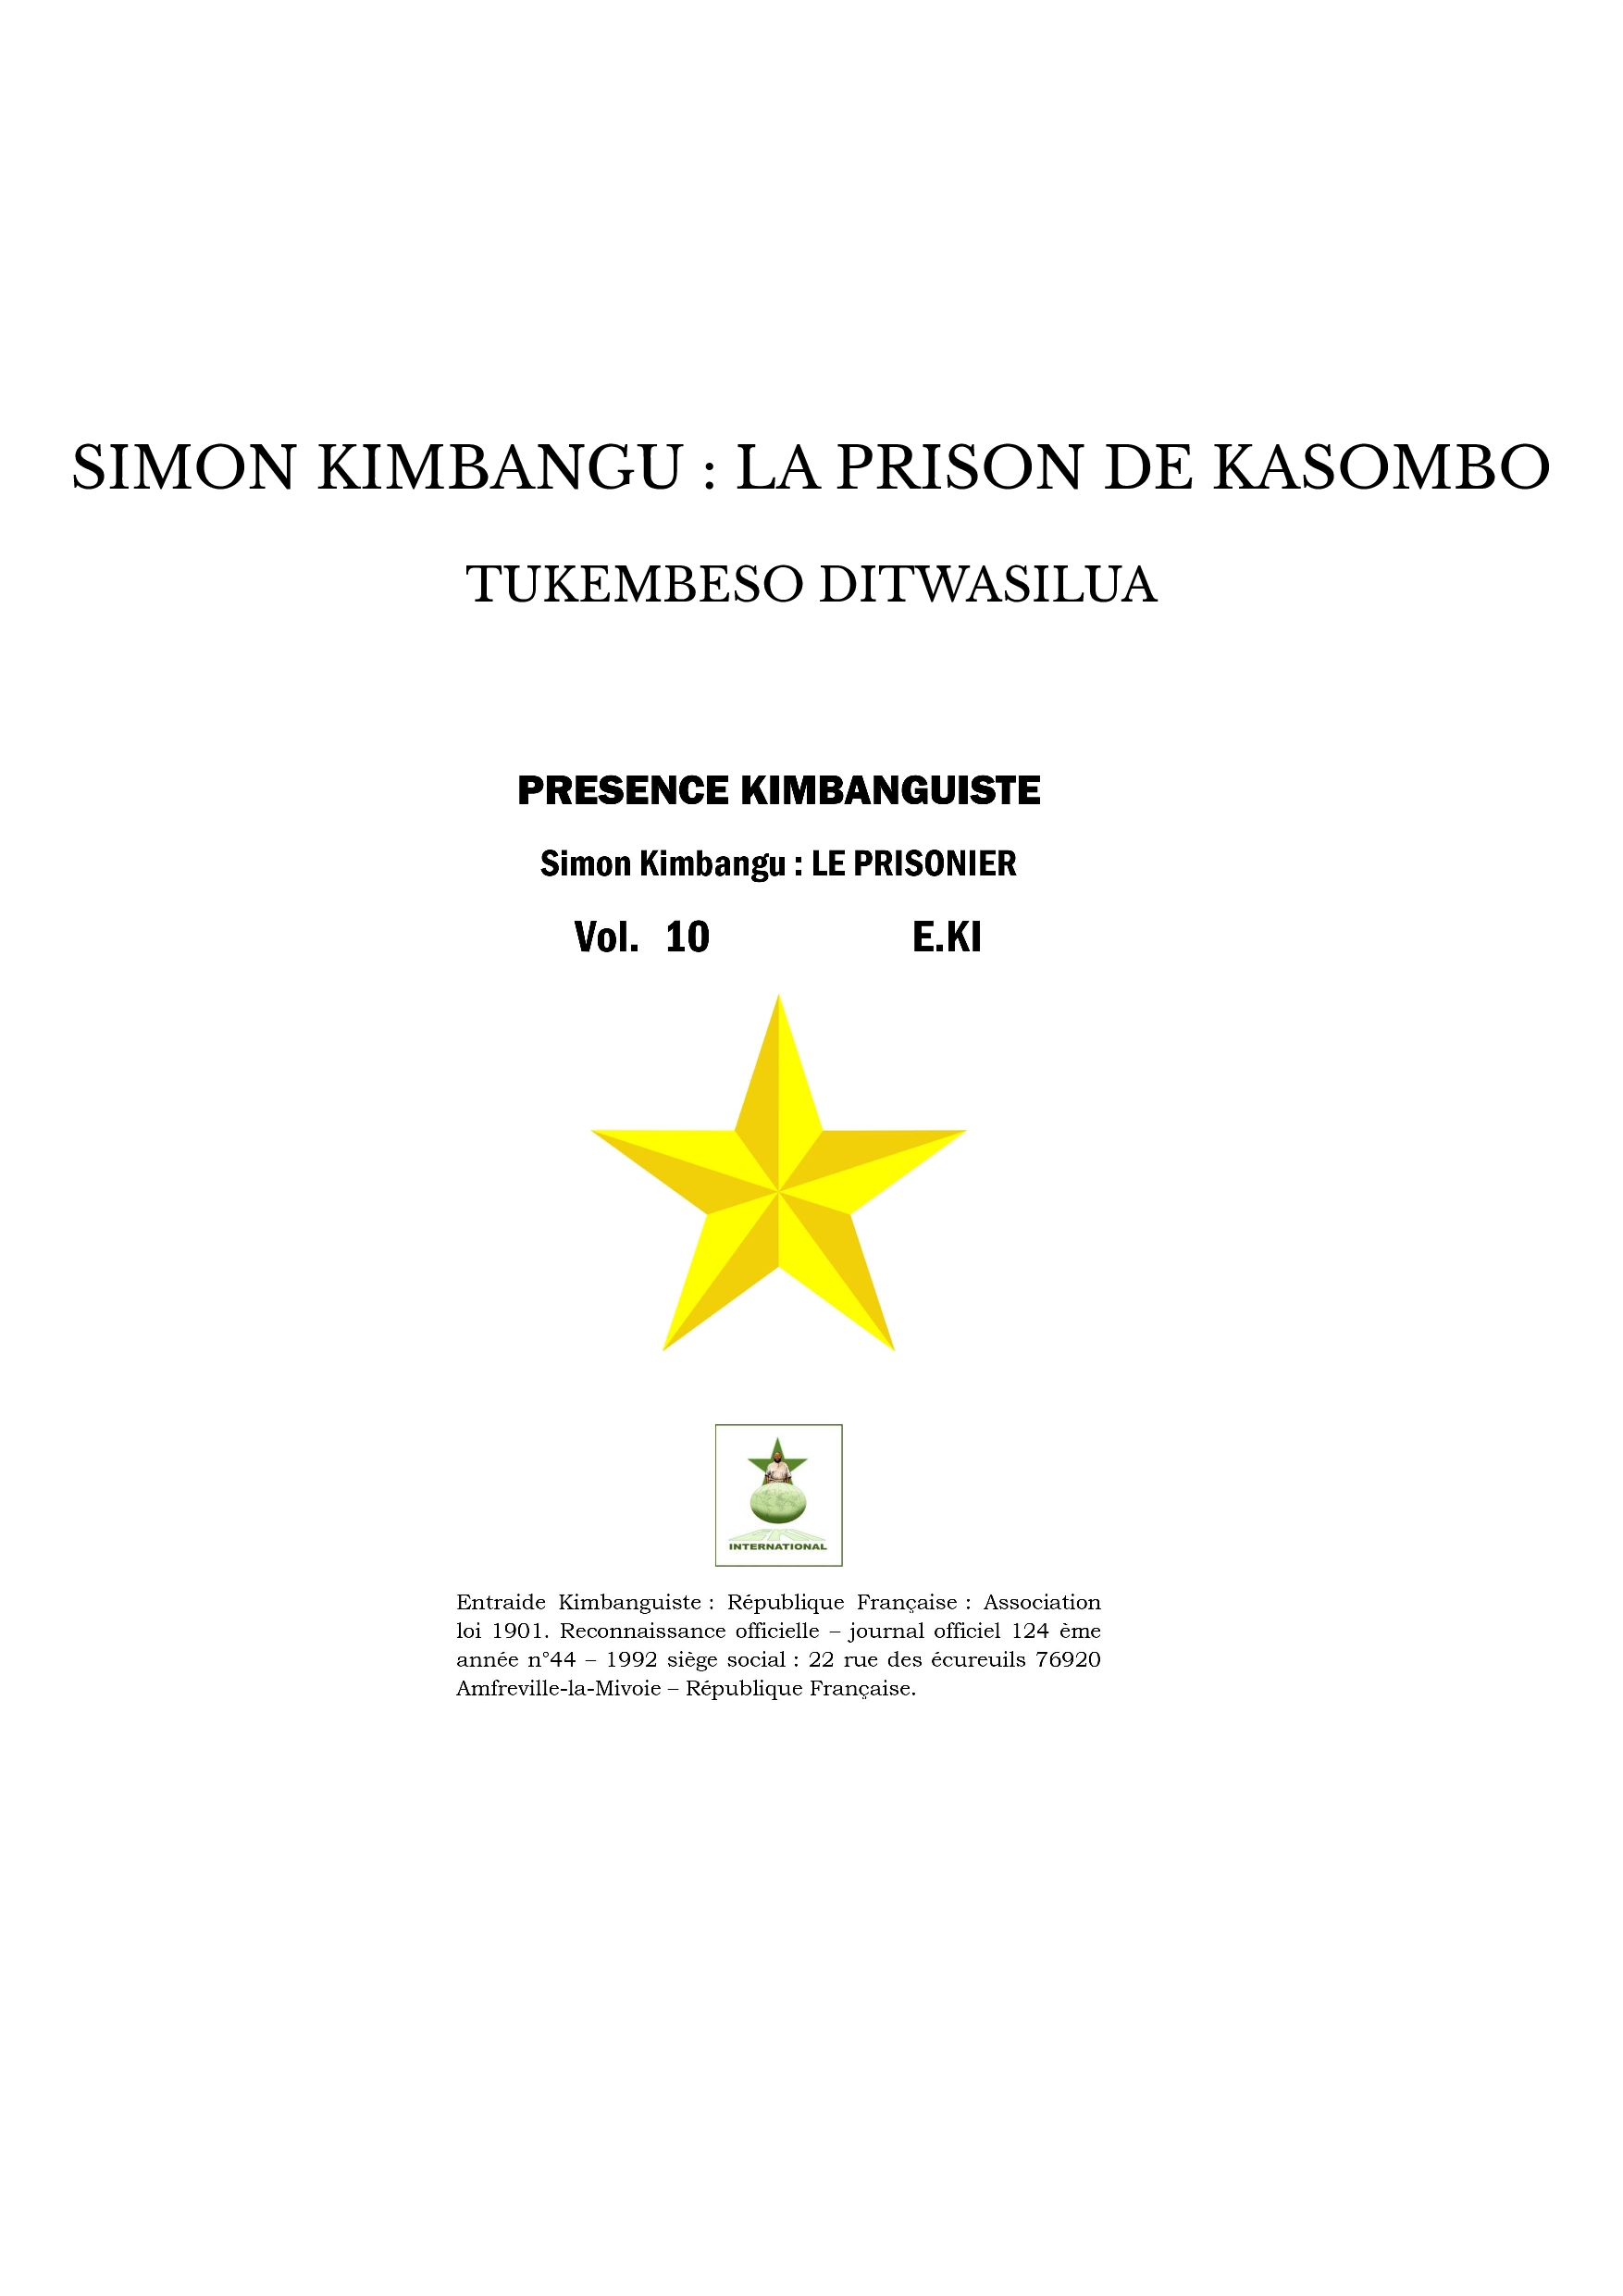 SIMON KIMBANGU : LA PRISON DE KASOMBO